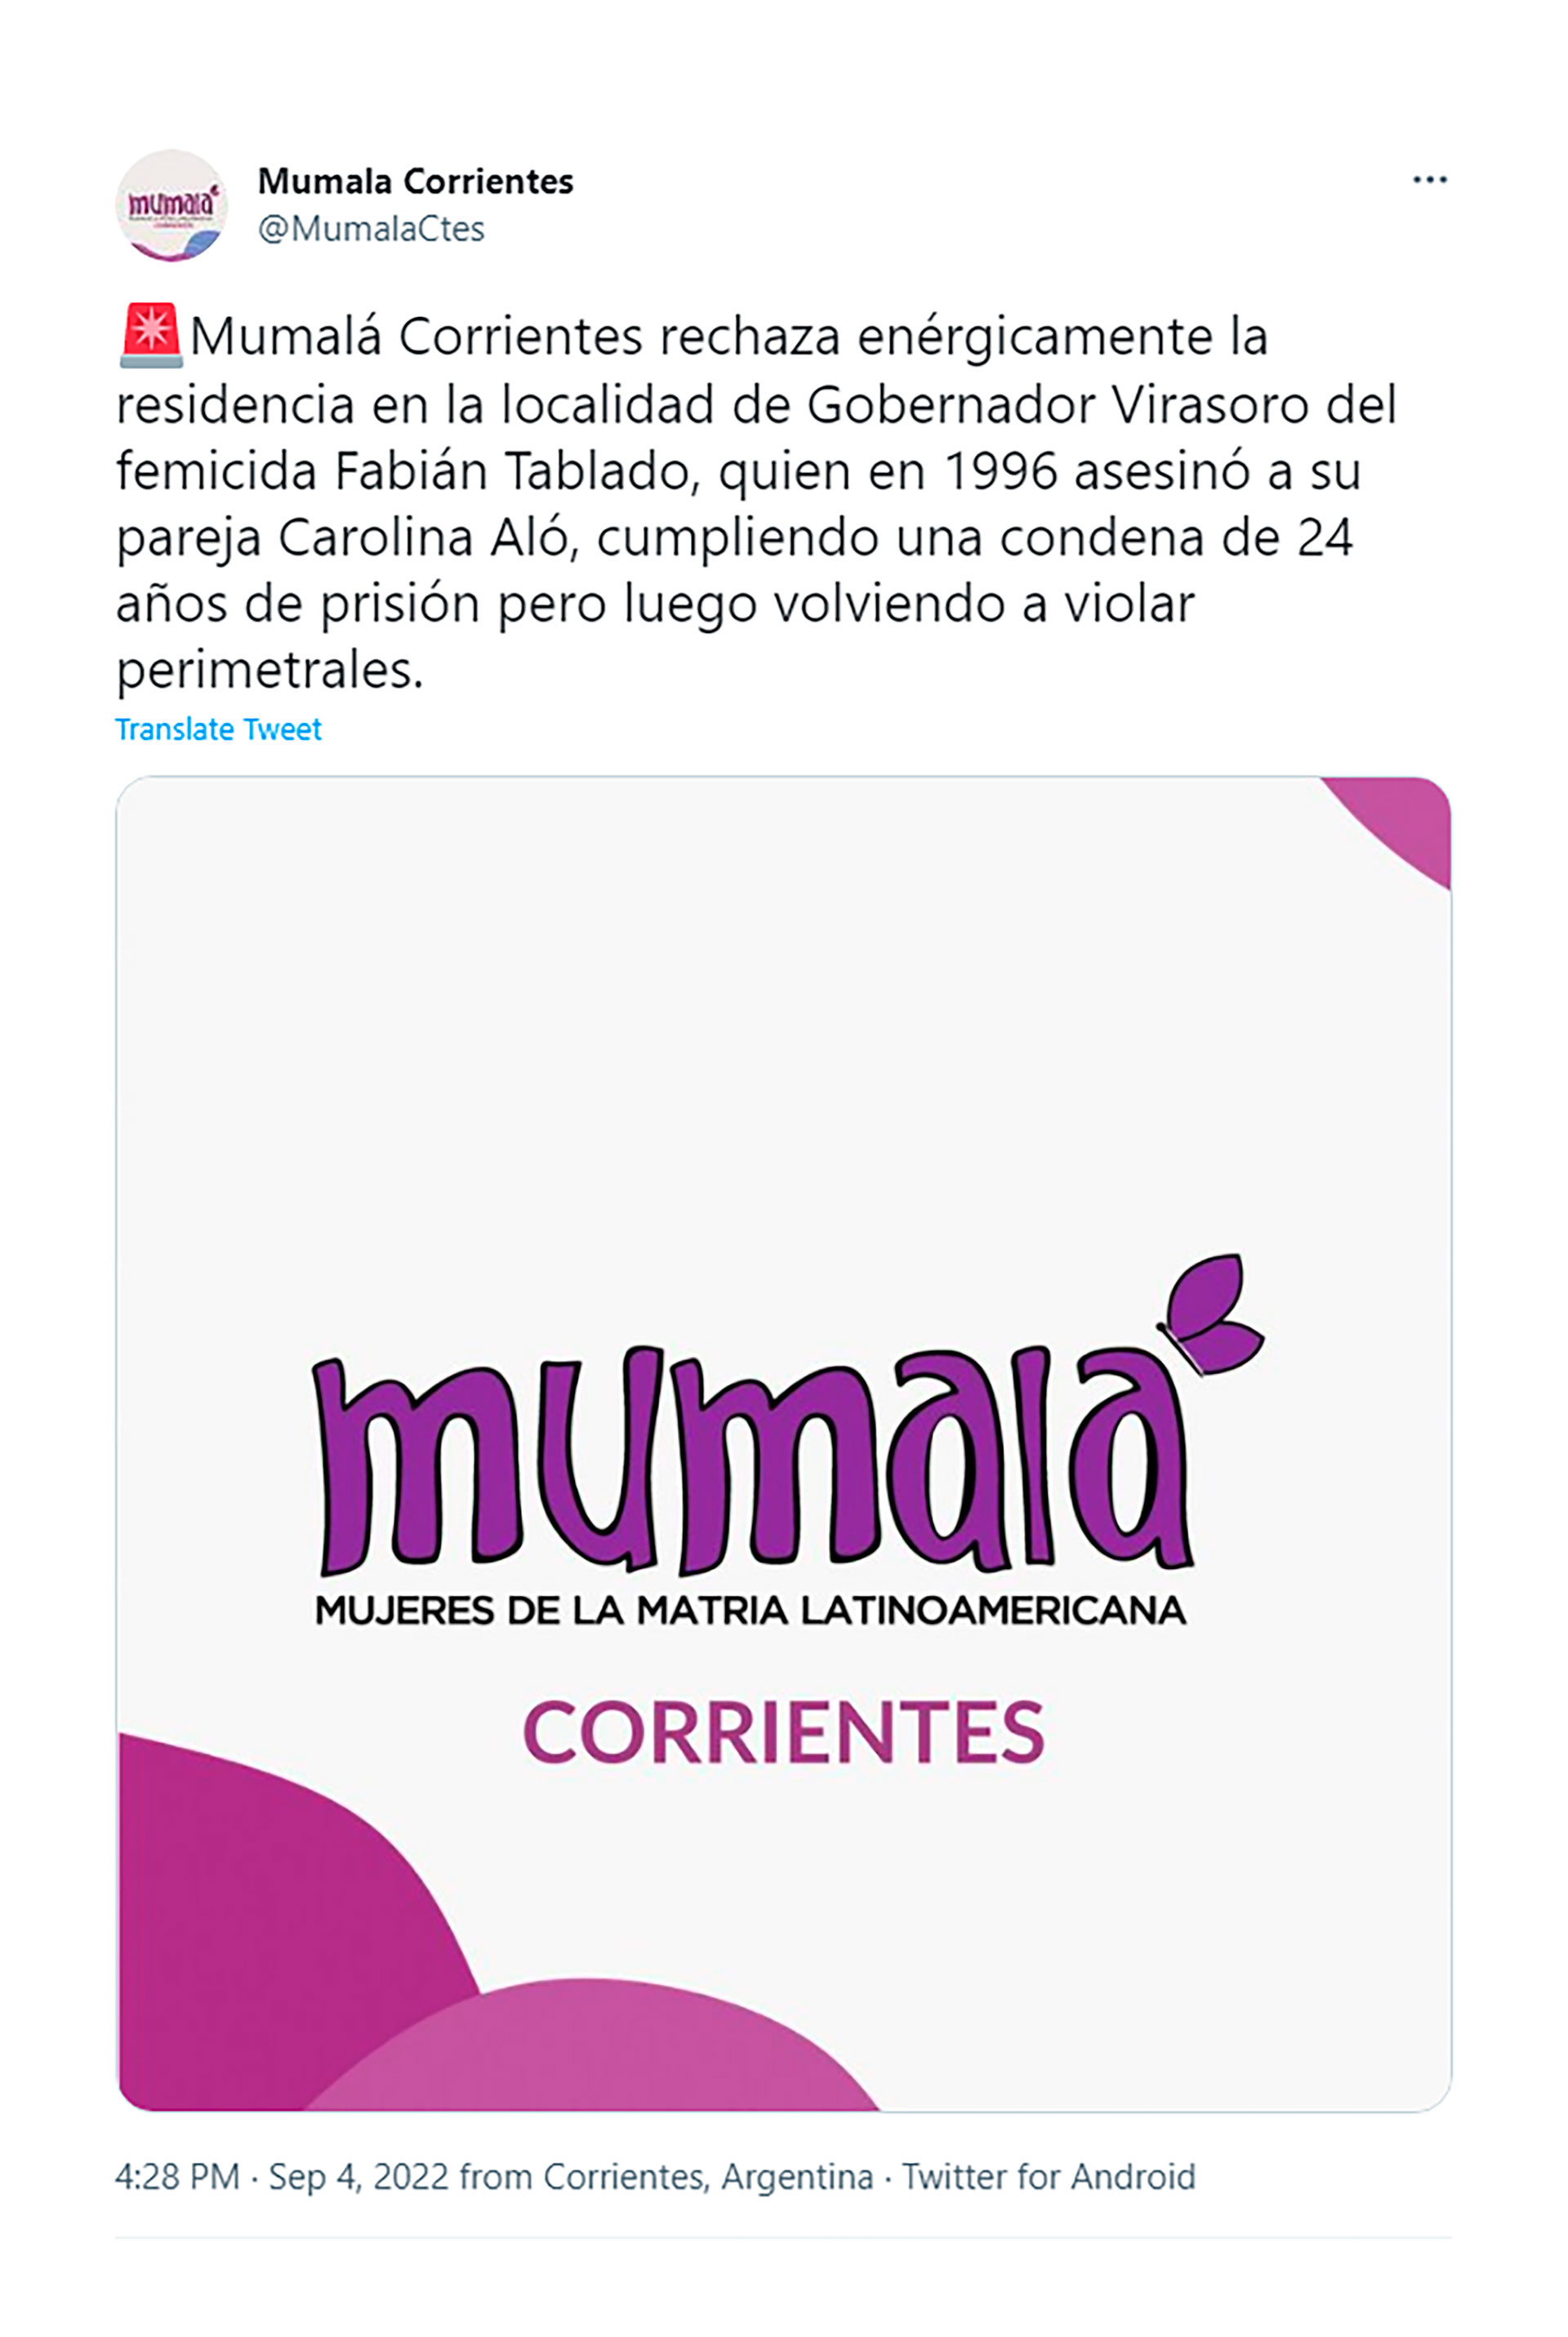 La agrupación feminista “Mumalá Corrientes” rechazó la residencia de Fabián Tablado en Gobernador Virasoro